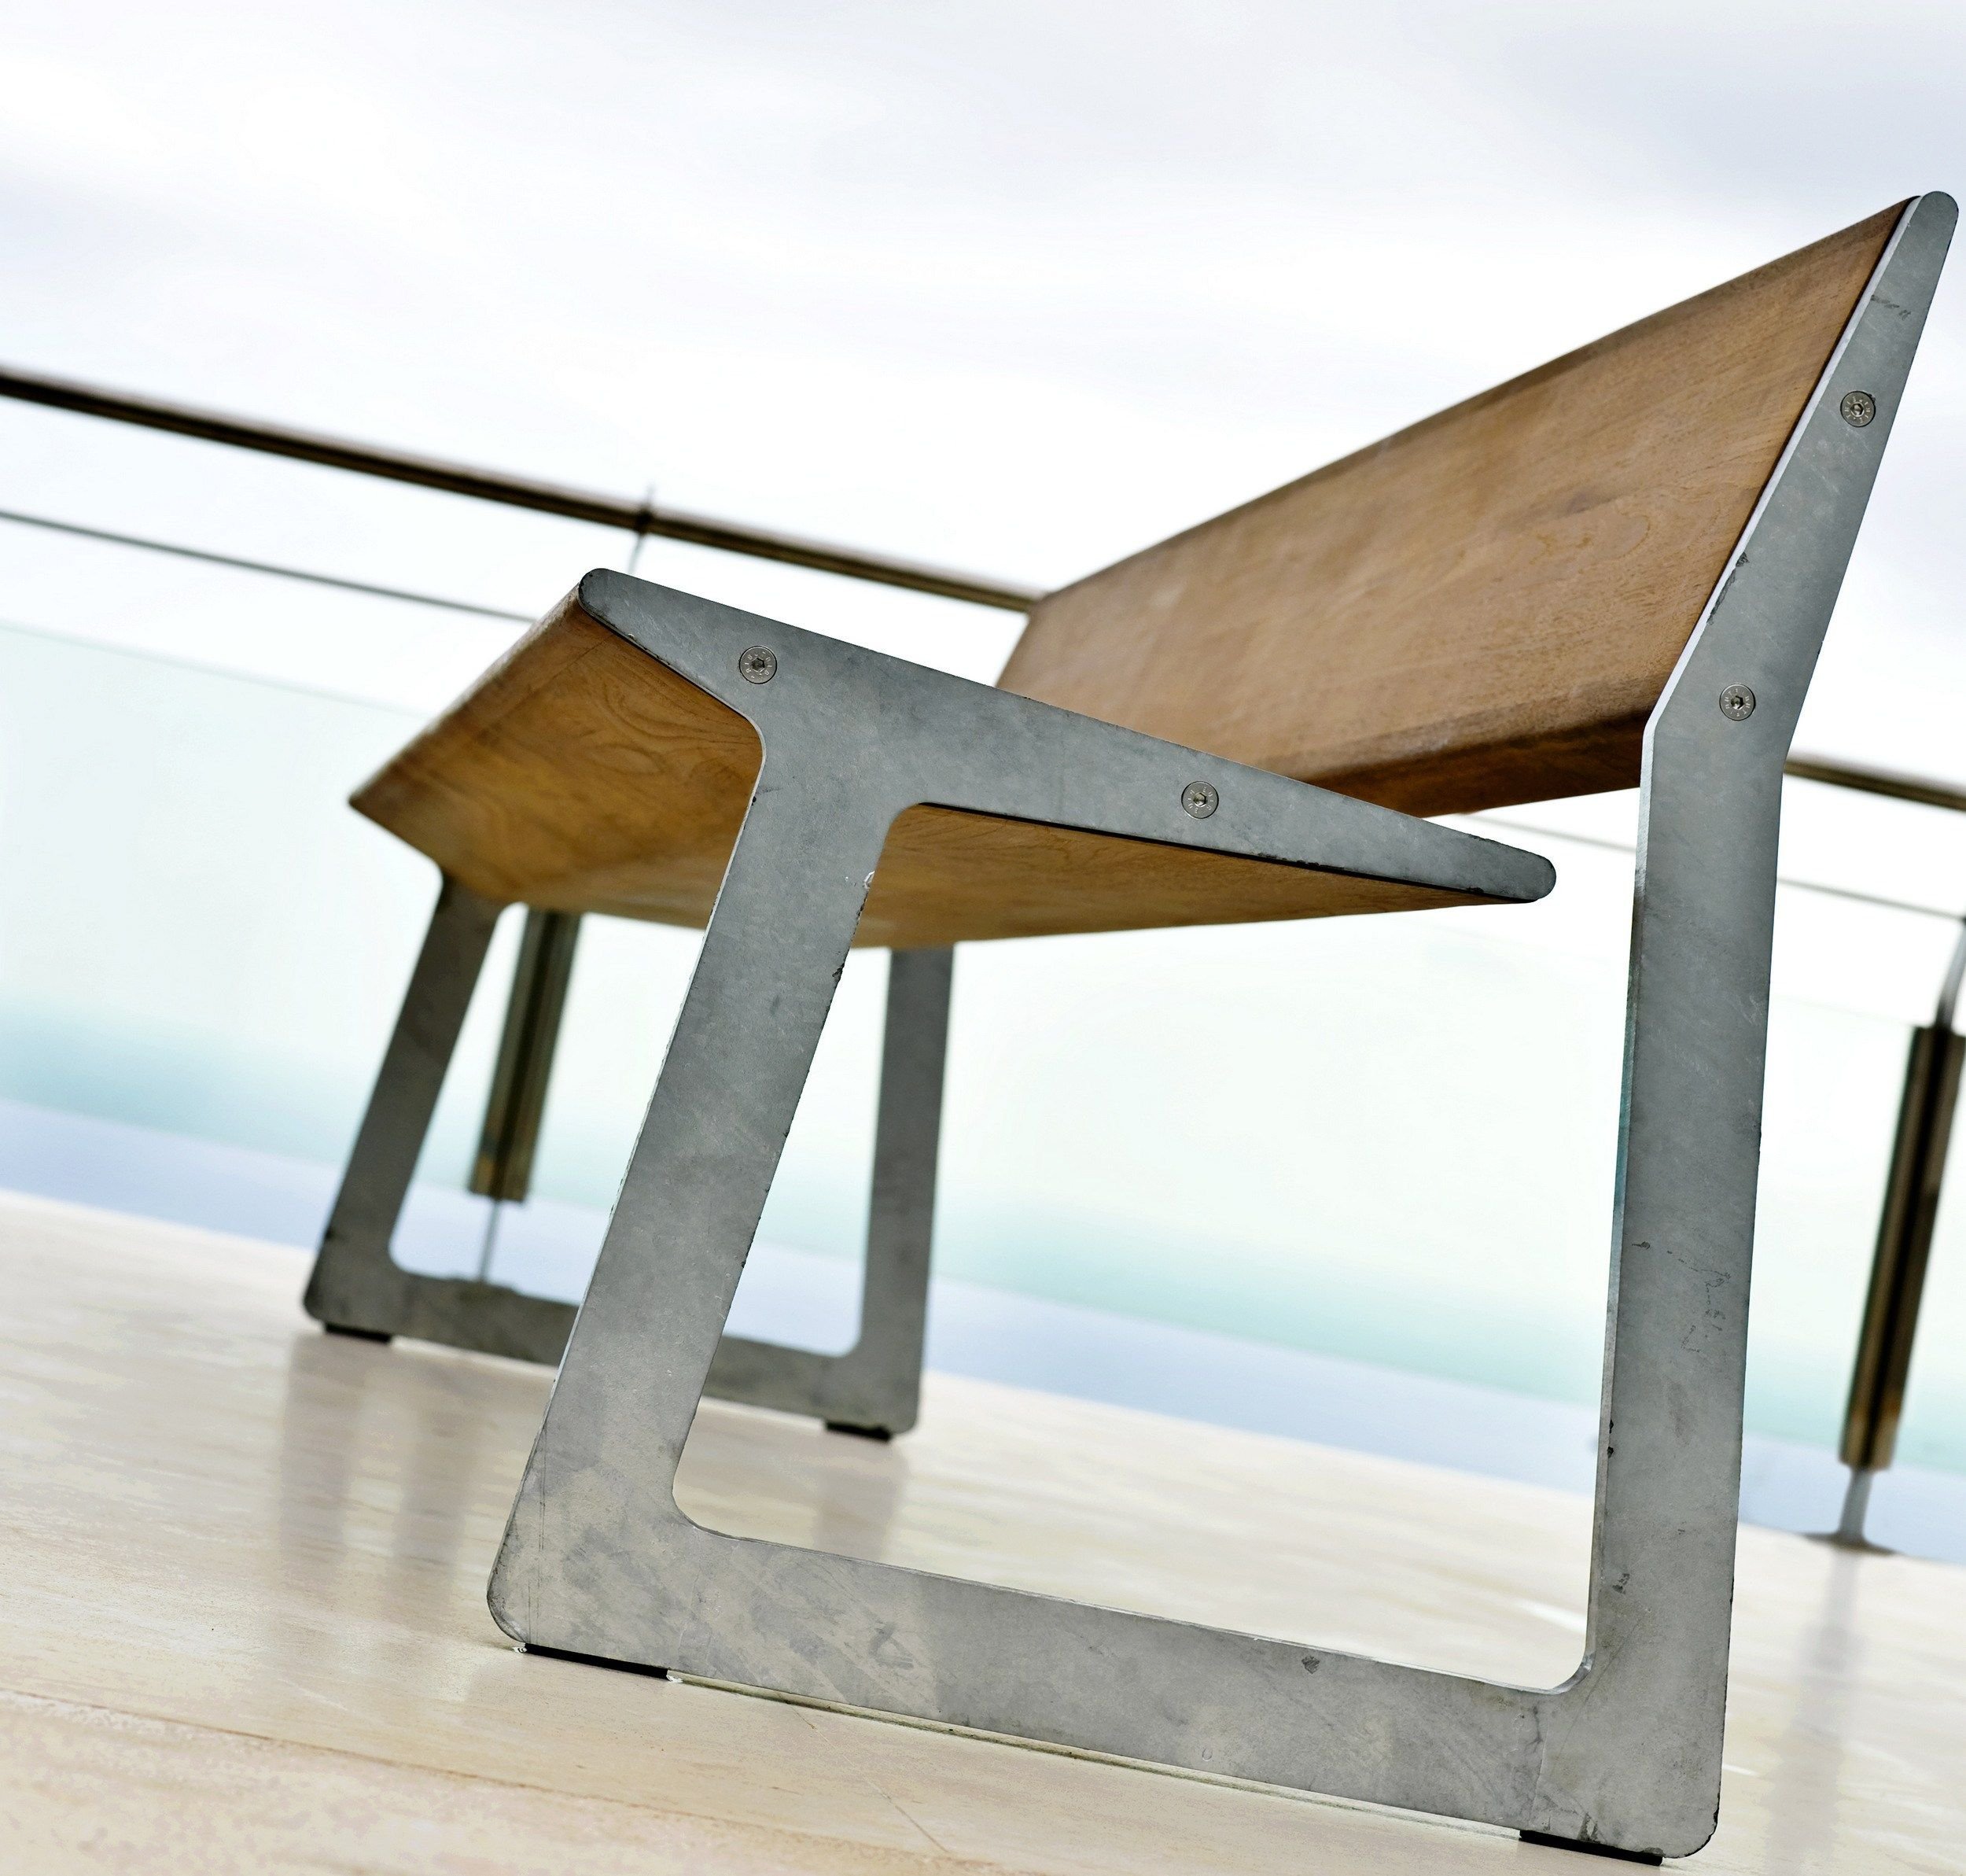 Весел мебель. Дизайнерская скамья. Дизайн скамейки. Смешная мебель. Садовый стул из бетона.